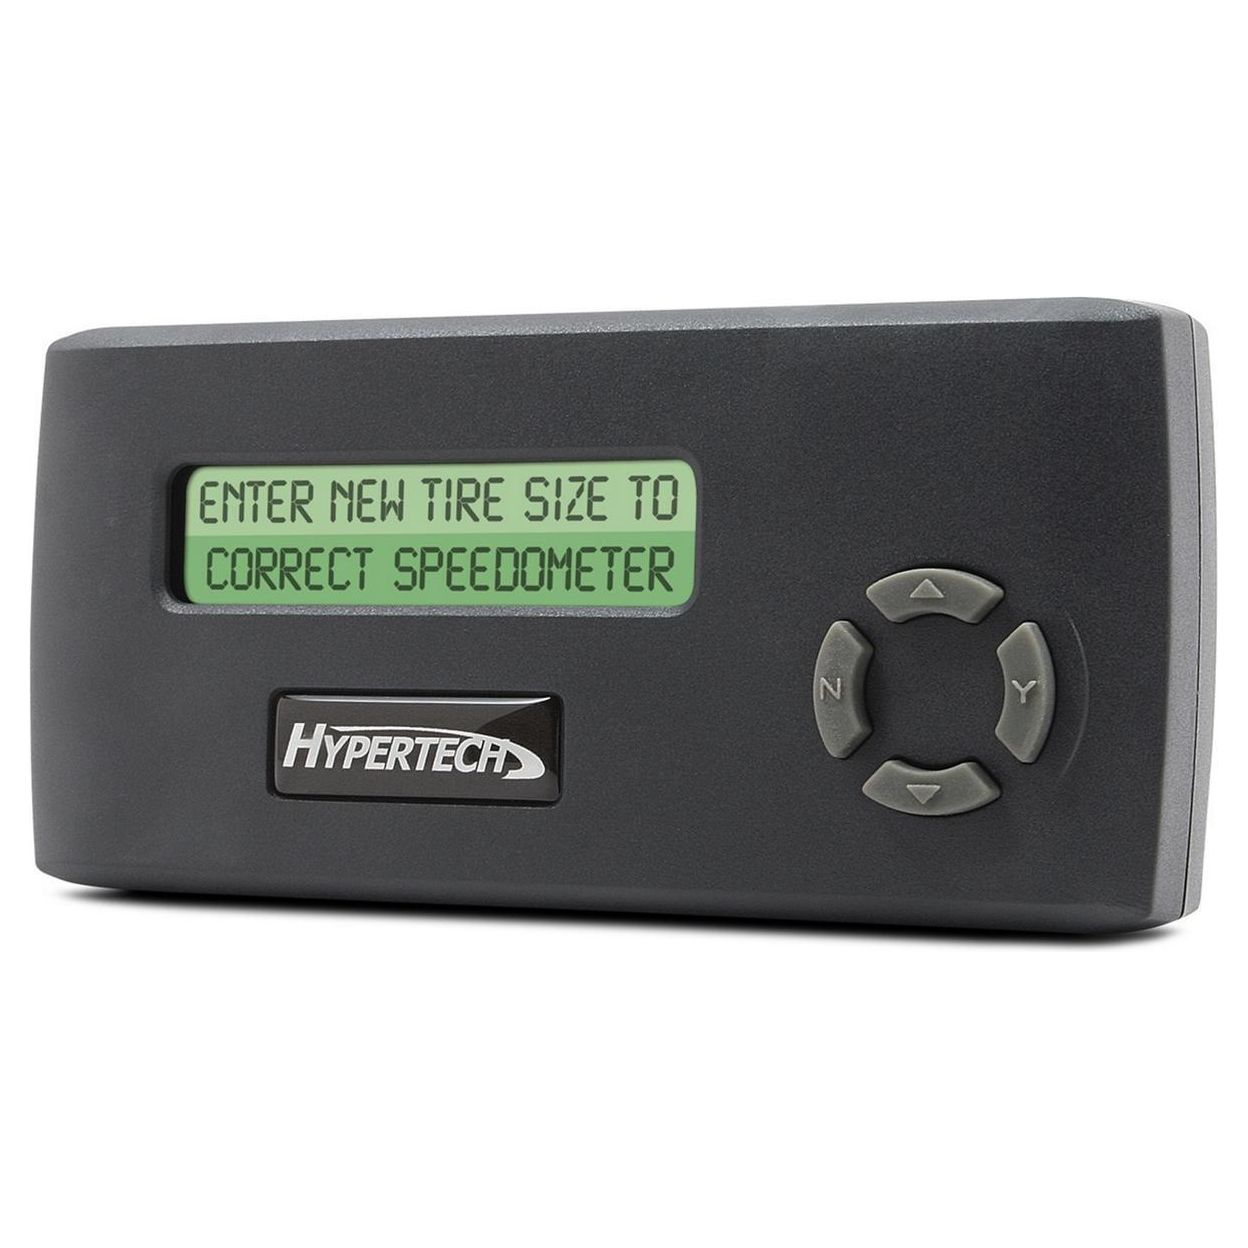 Hypertech 732500 Speedometer Calibrator for Non-Stock Tire Sizes/Rear Gear Ratio